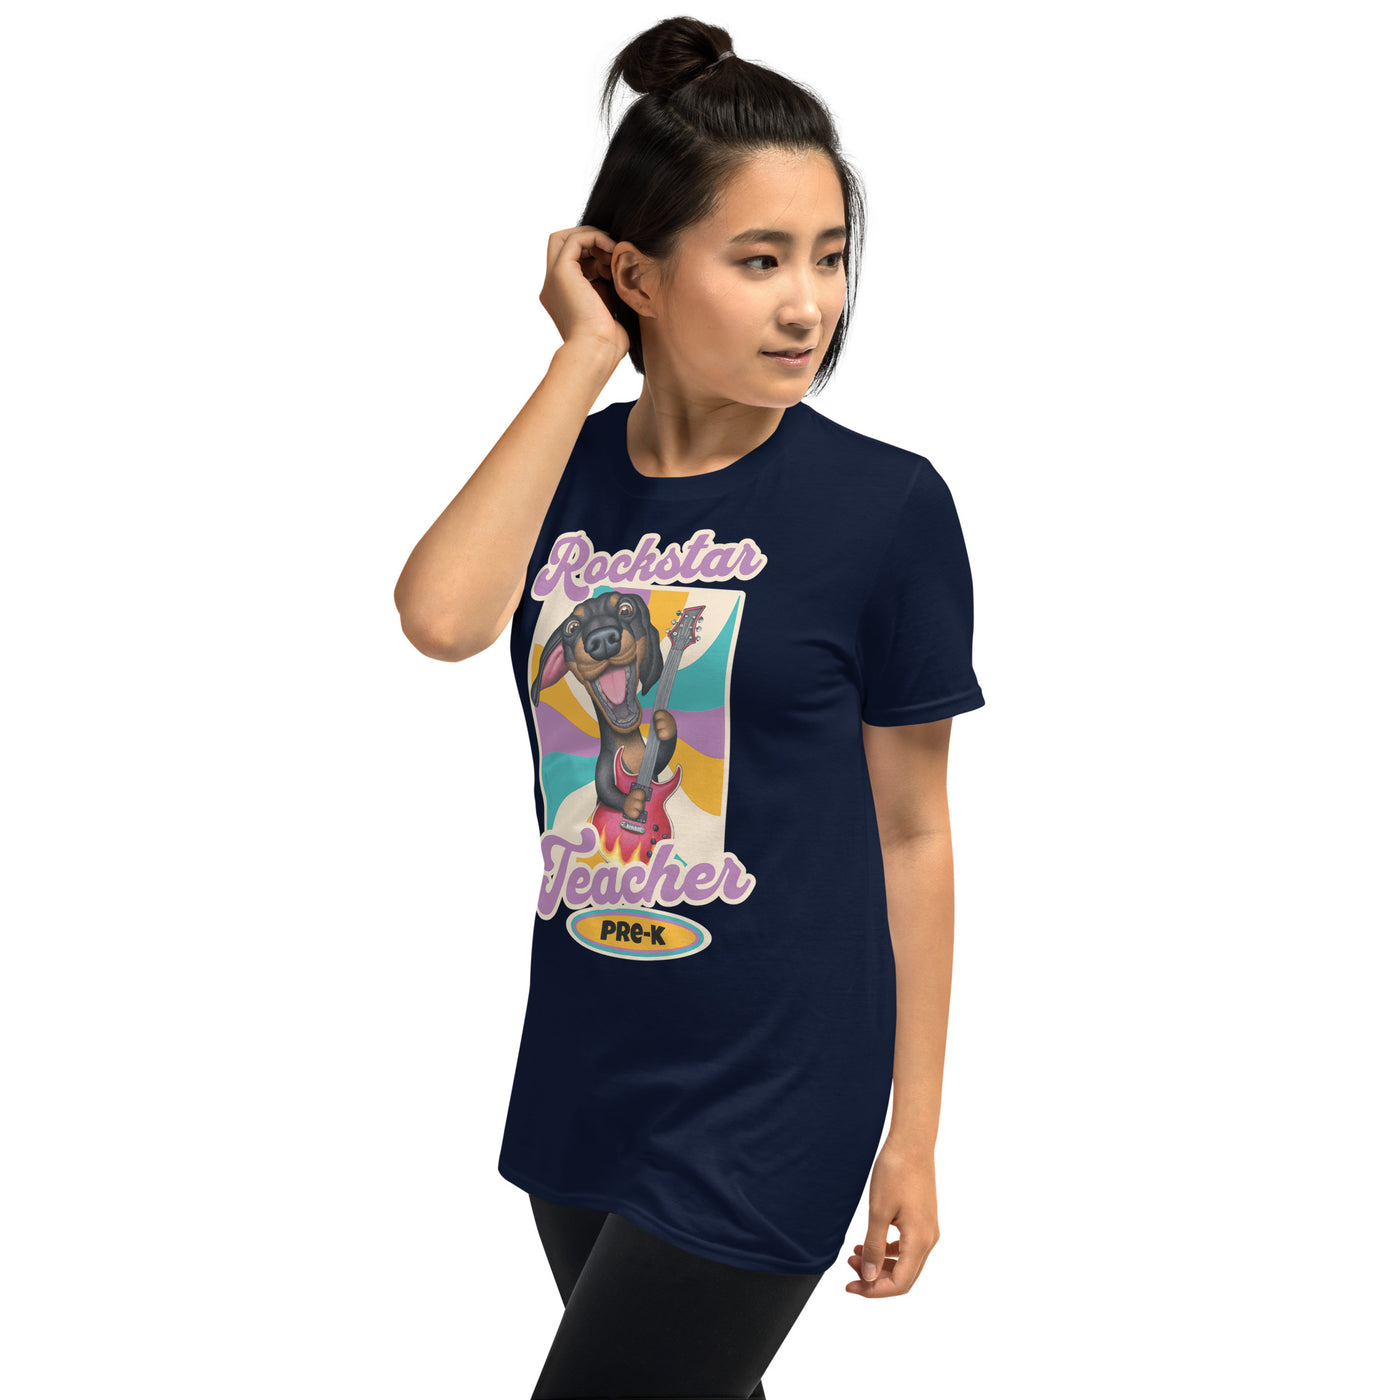 Cute funny classroom teacher tee with doxie dog on a cool Pre-K Rockstar Teacher Unisex T-Shirt